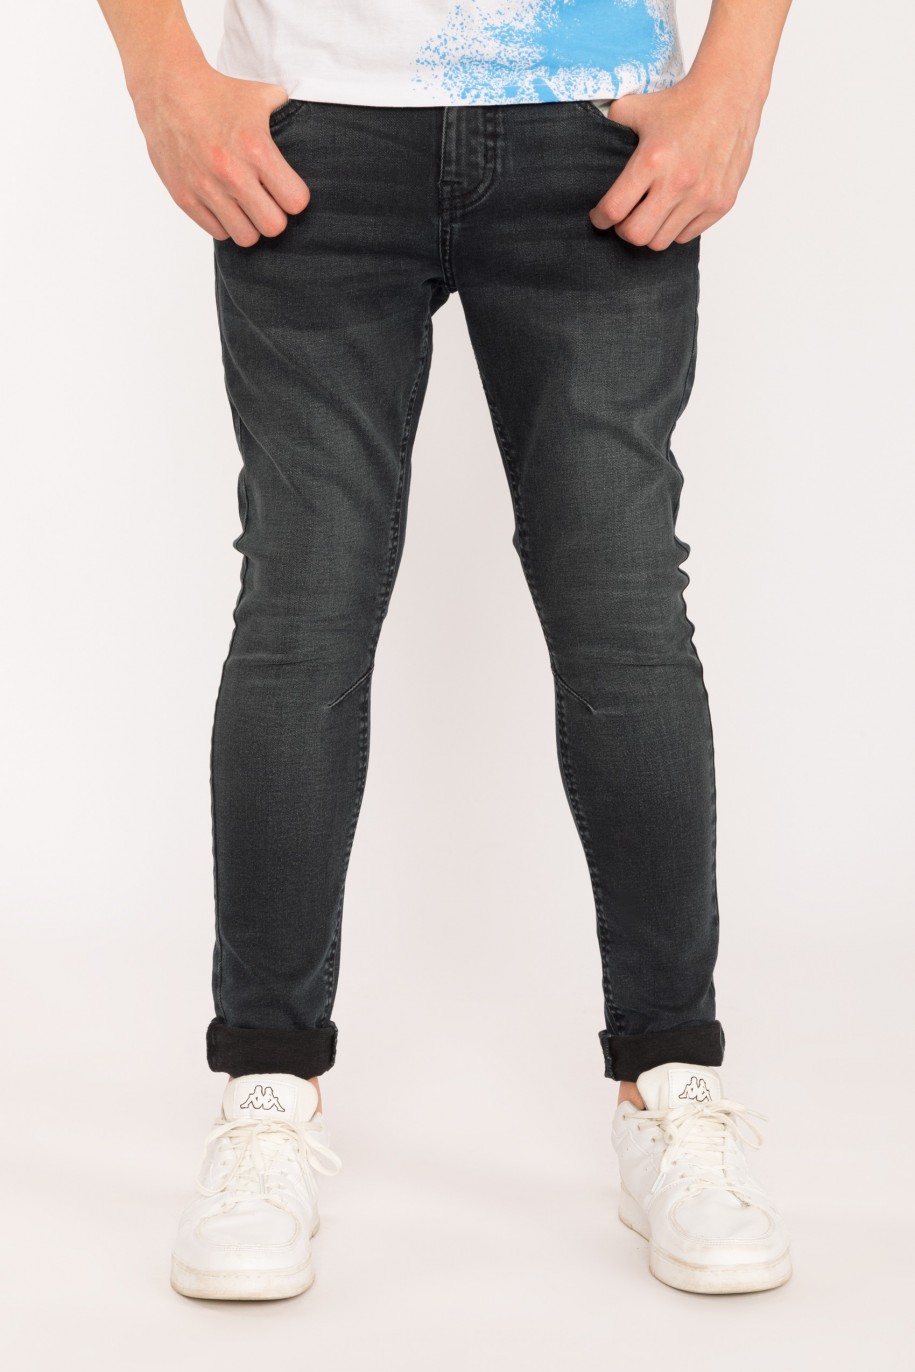 Granatowe jeansowe spodnie dla chłopaka Regular - 29517